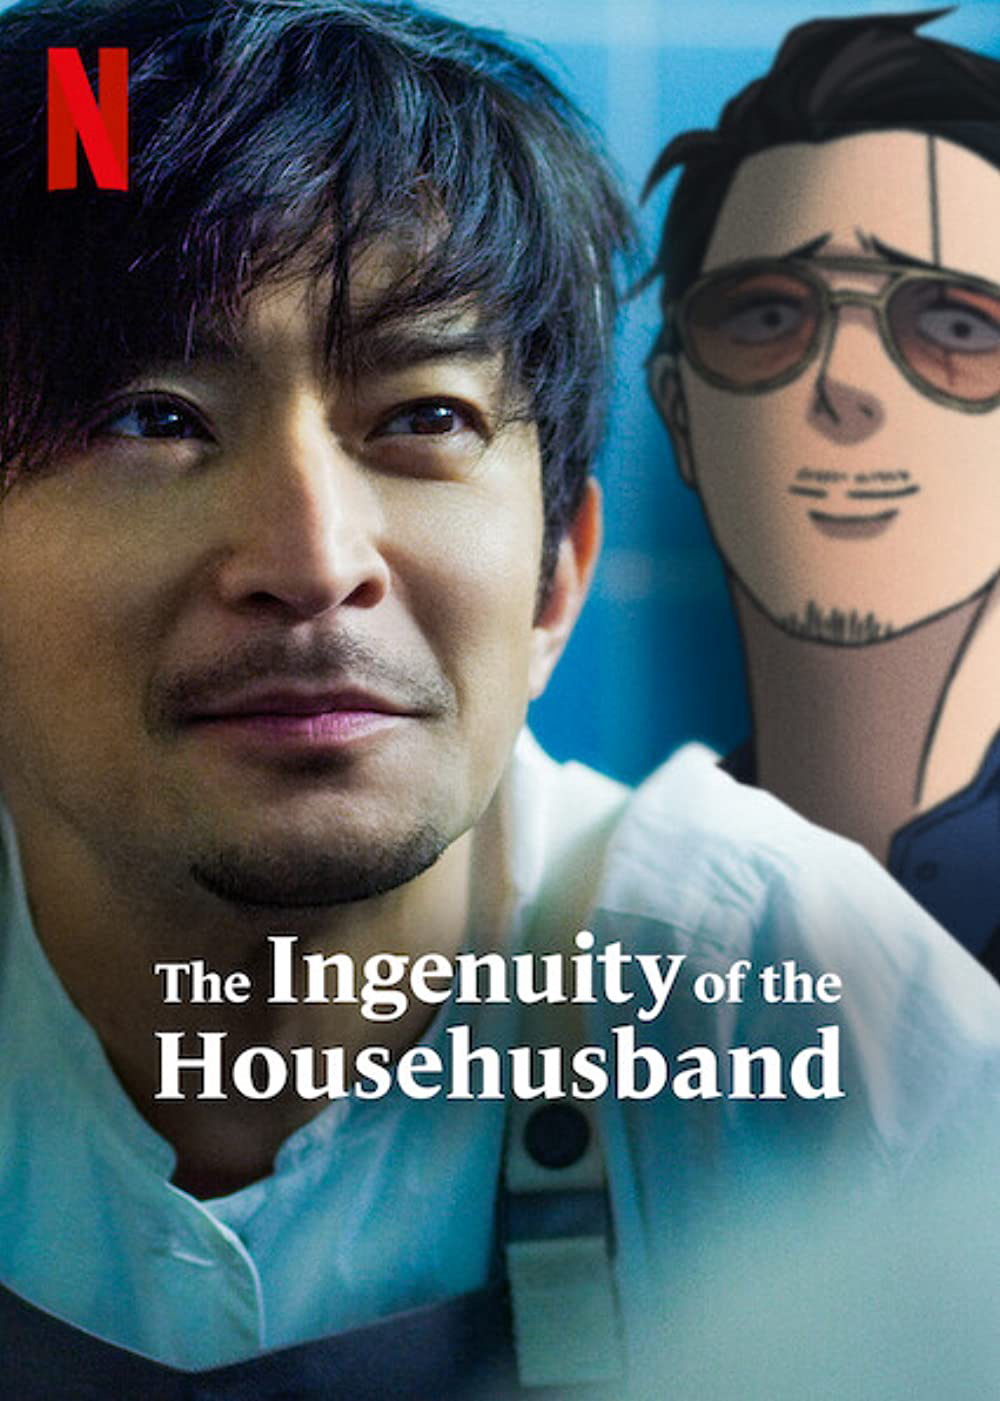 Xem Phim Ông chồng yakuza nội trợ: Đạo làm chồng lắm công phu (The Ingenuity of the Househusband)